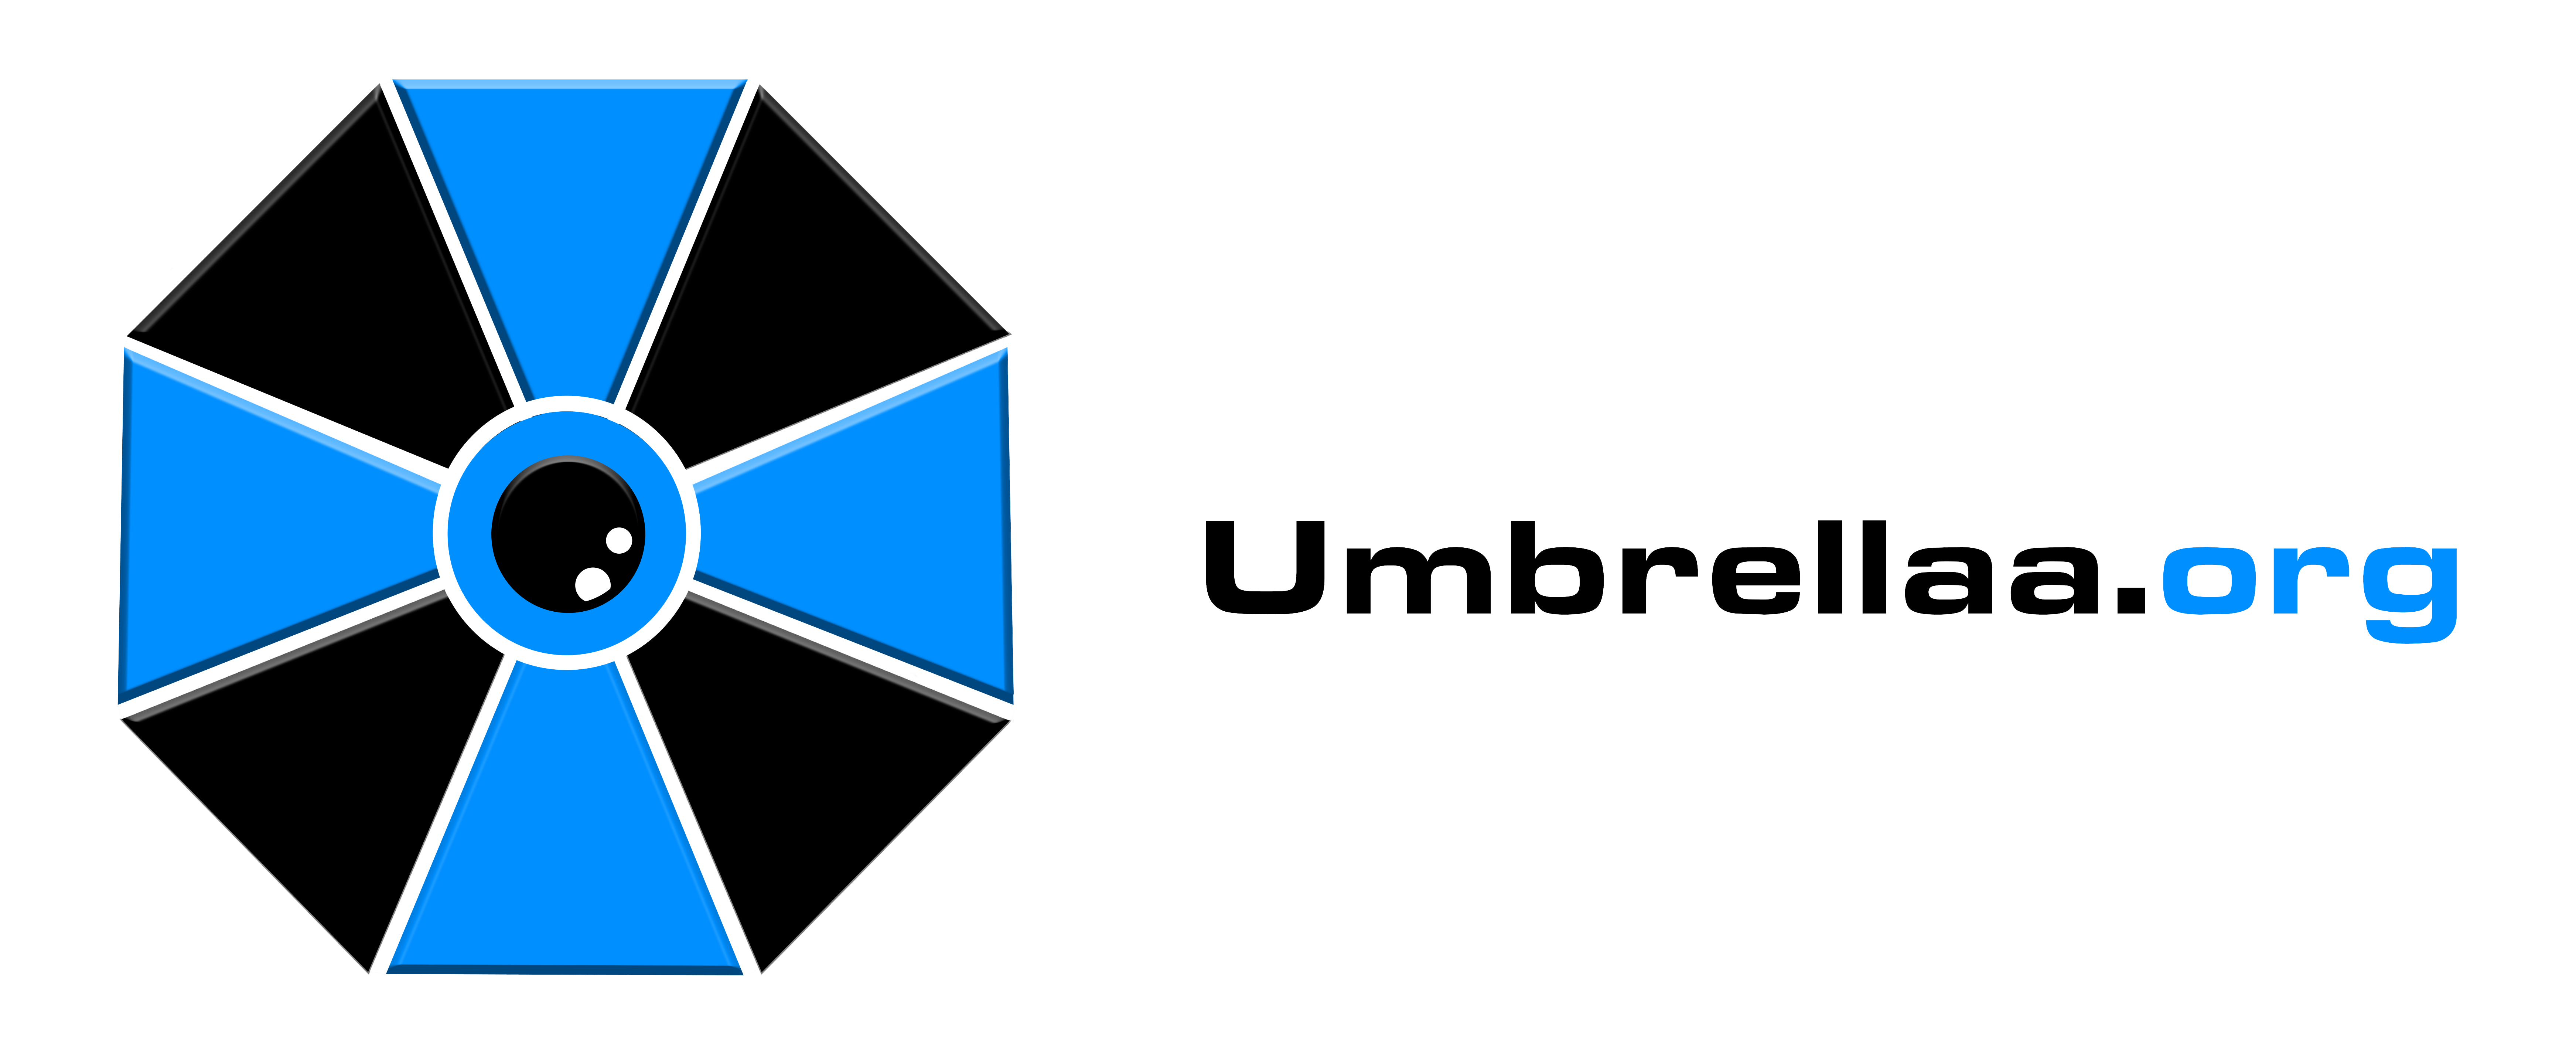 Logo umbrellaa.org